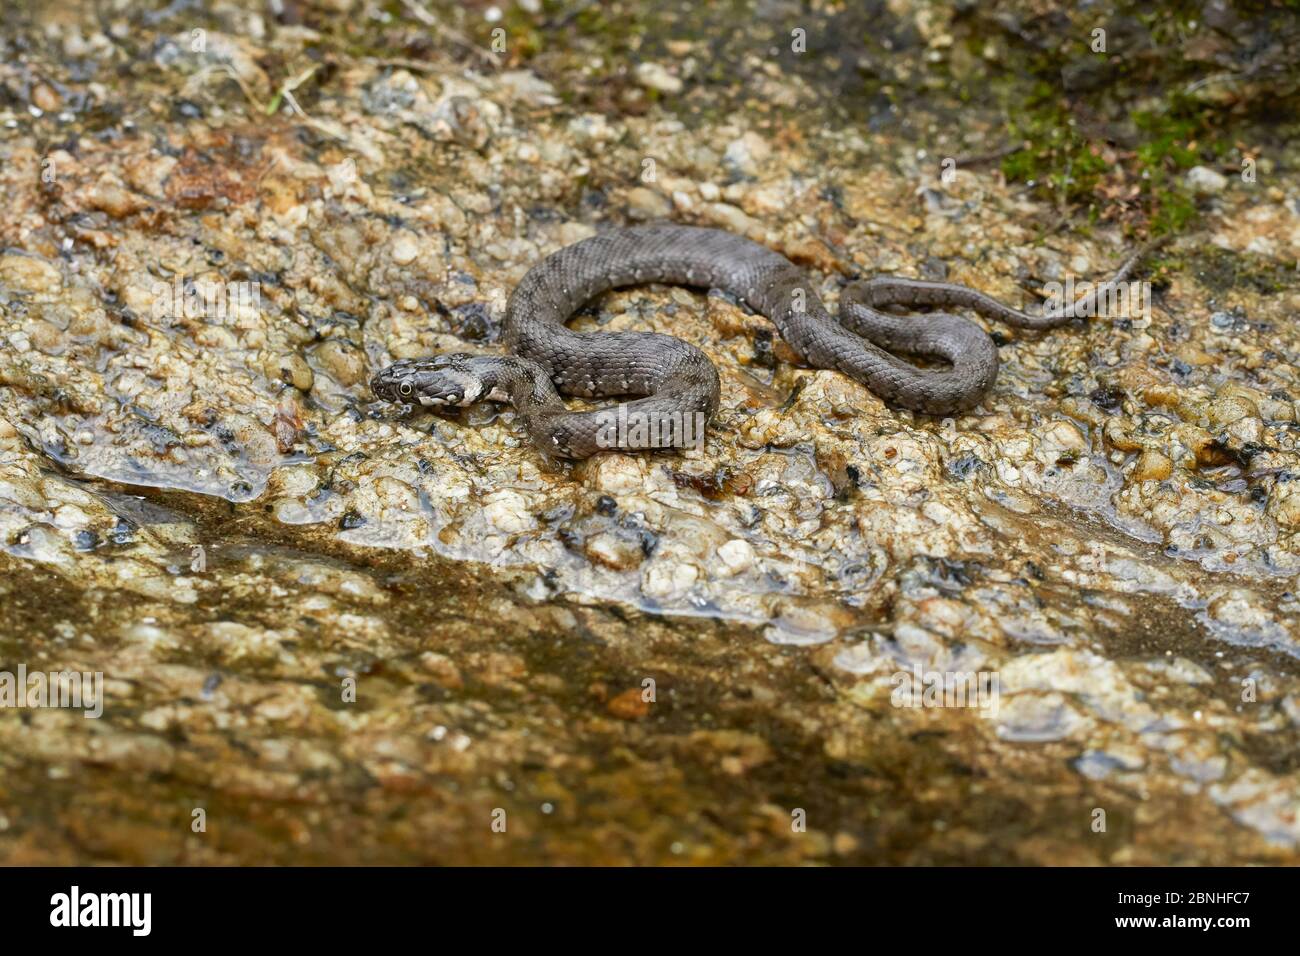 Viperine snake (Natrix maura) a harmless water loving species, Extremadura, Spain Stock Photo